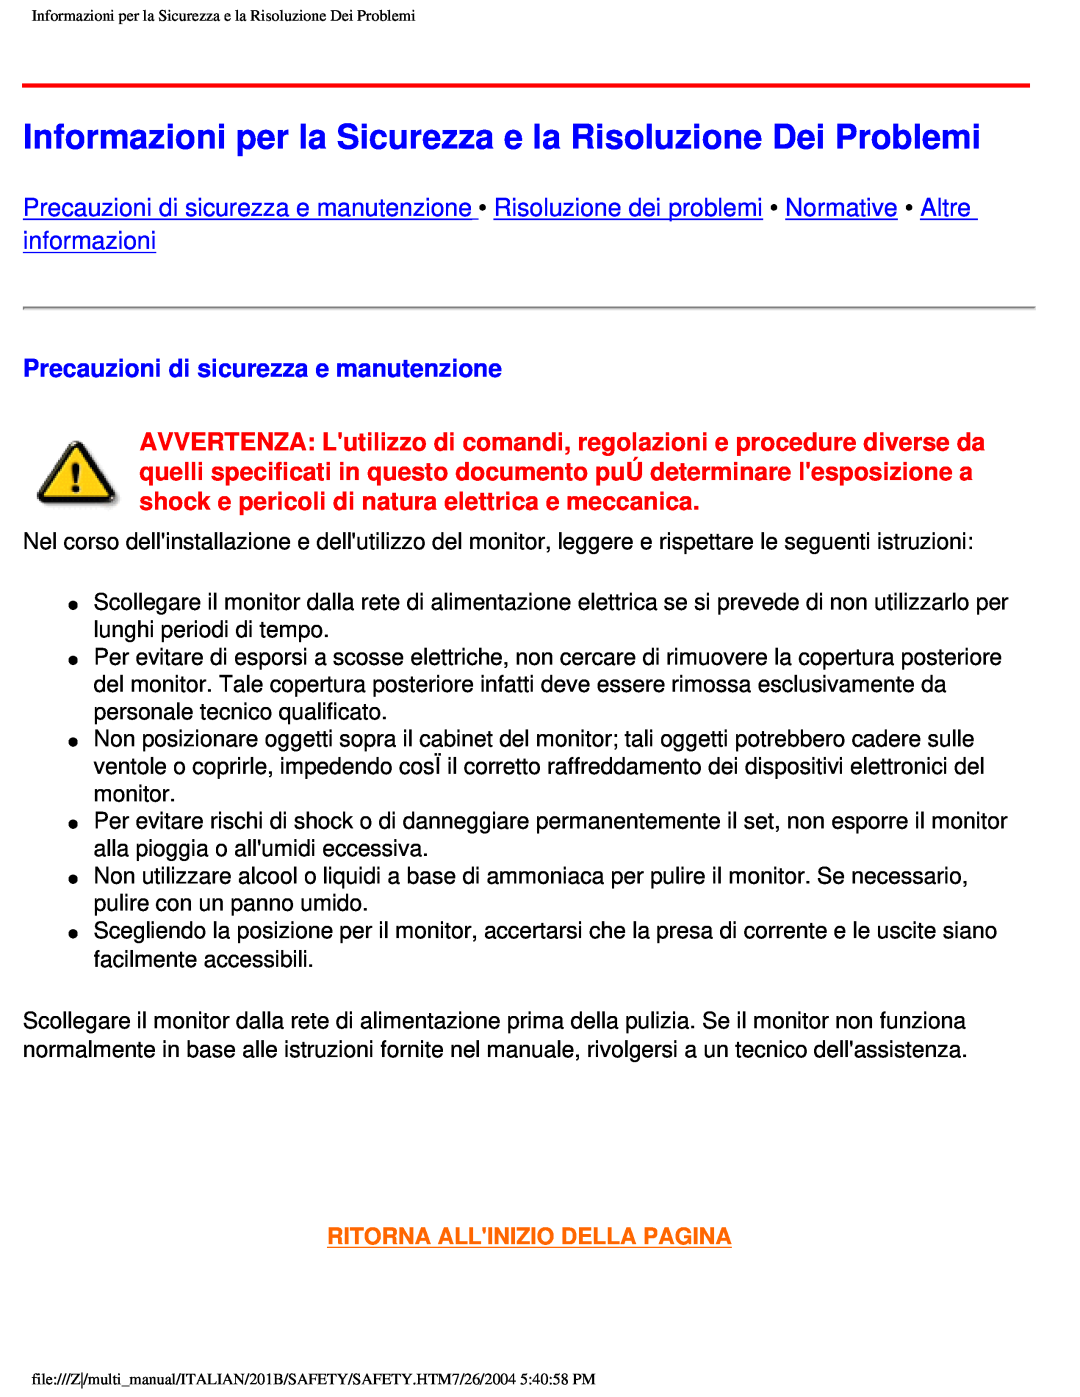 Philips 201B user manual Precauzioni di sicurezza e manutenzione, Ritorna Allinizio Della Pagina 